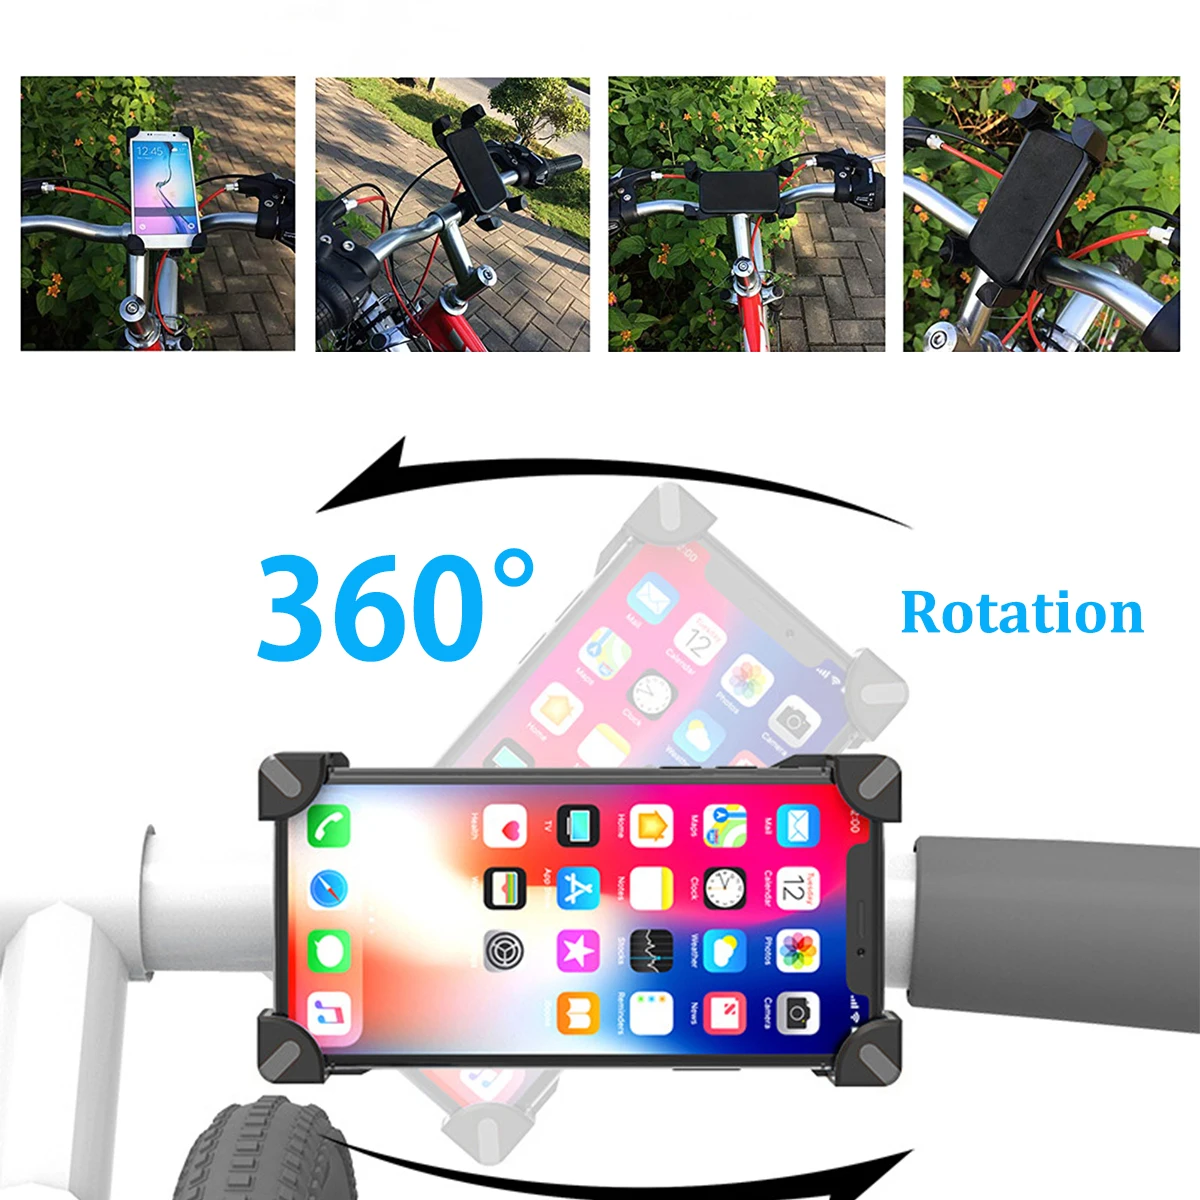 Motosiklet telefon tutucu Anti-shake ve Stabilize 360° Dönen Mekanik Bisiklet telefon tutucu IOS Android cihazlar ile Uyumlu Görüntü 2